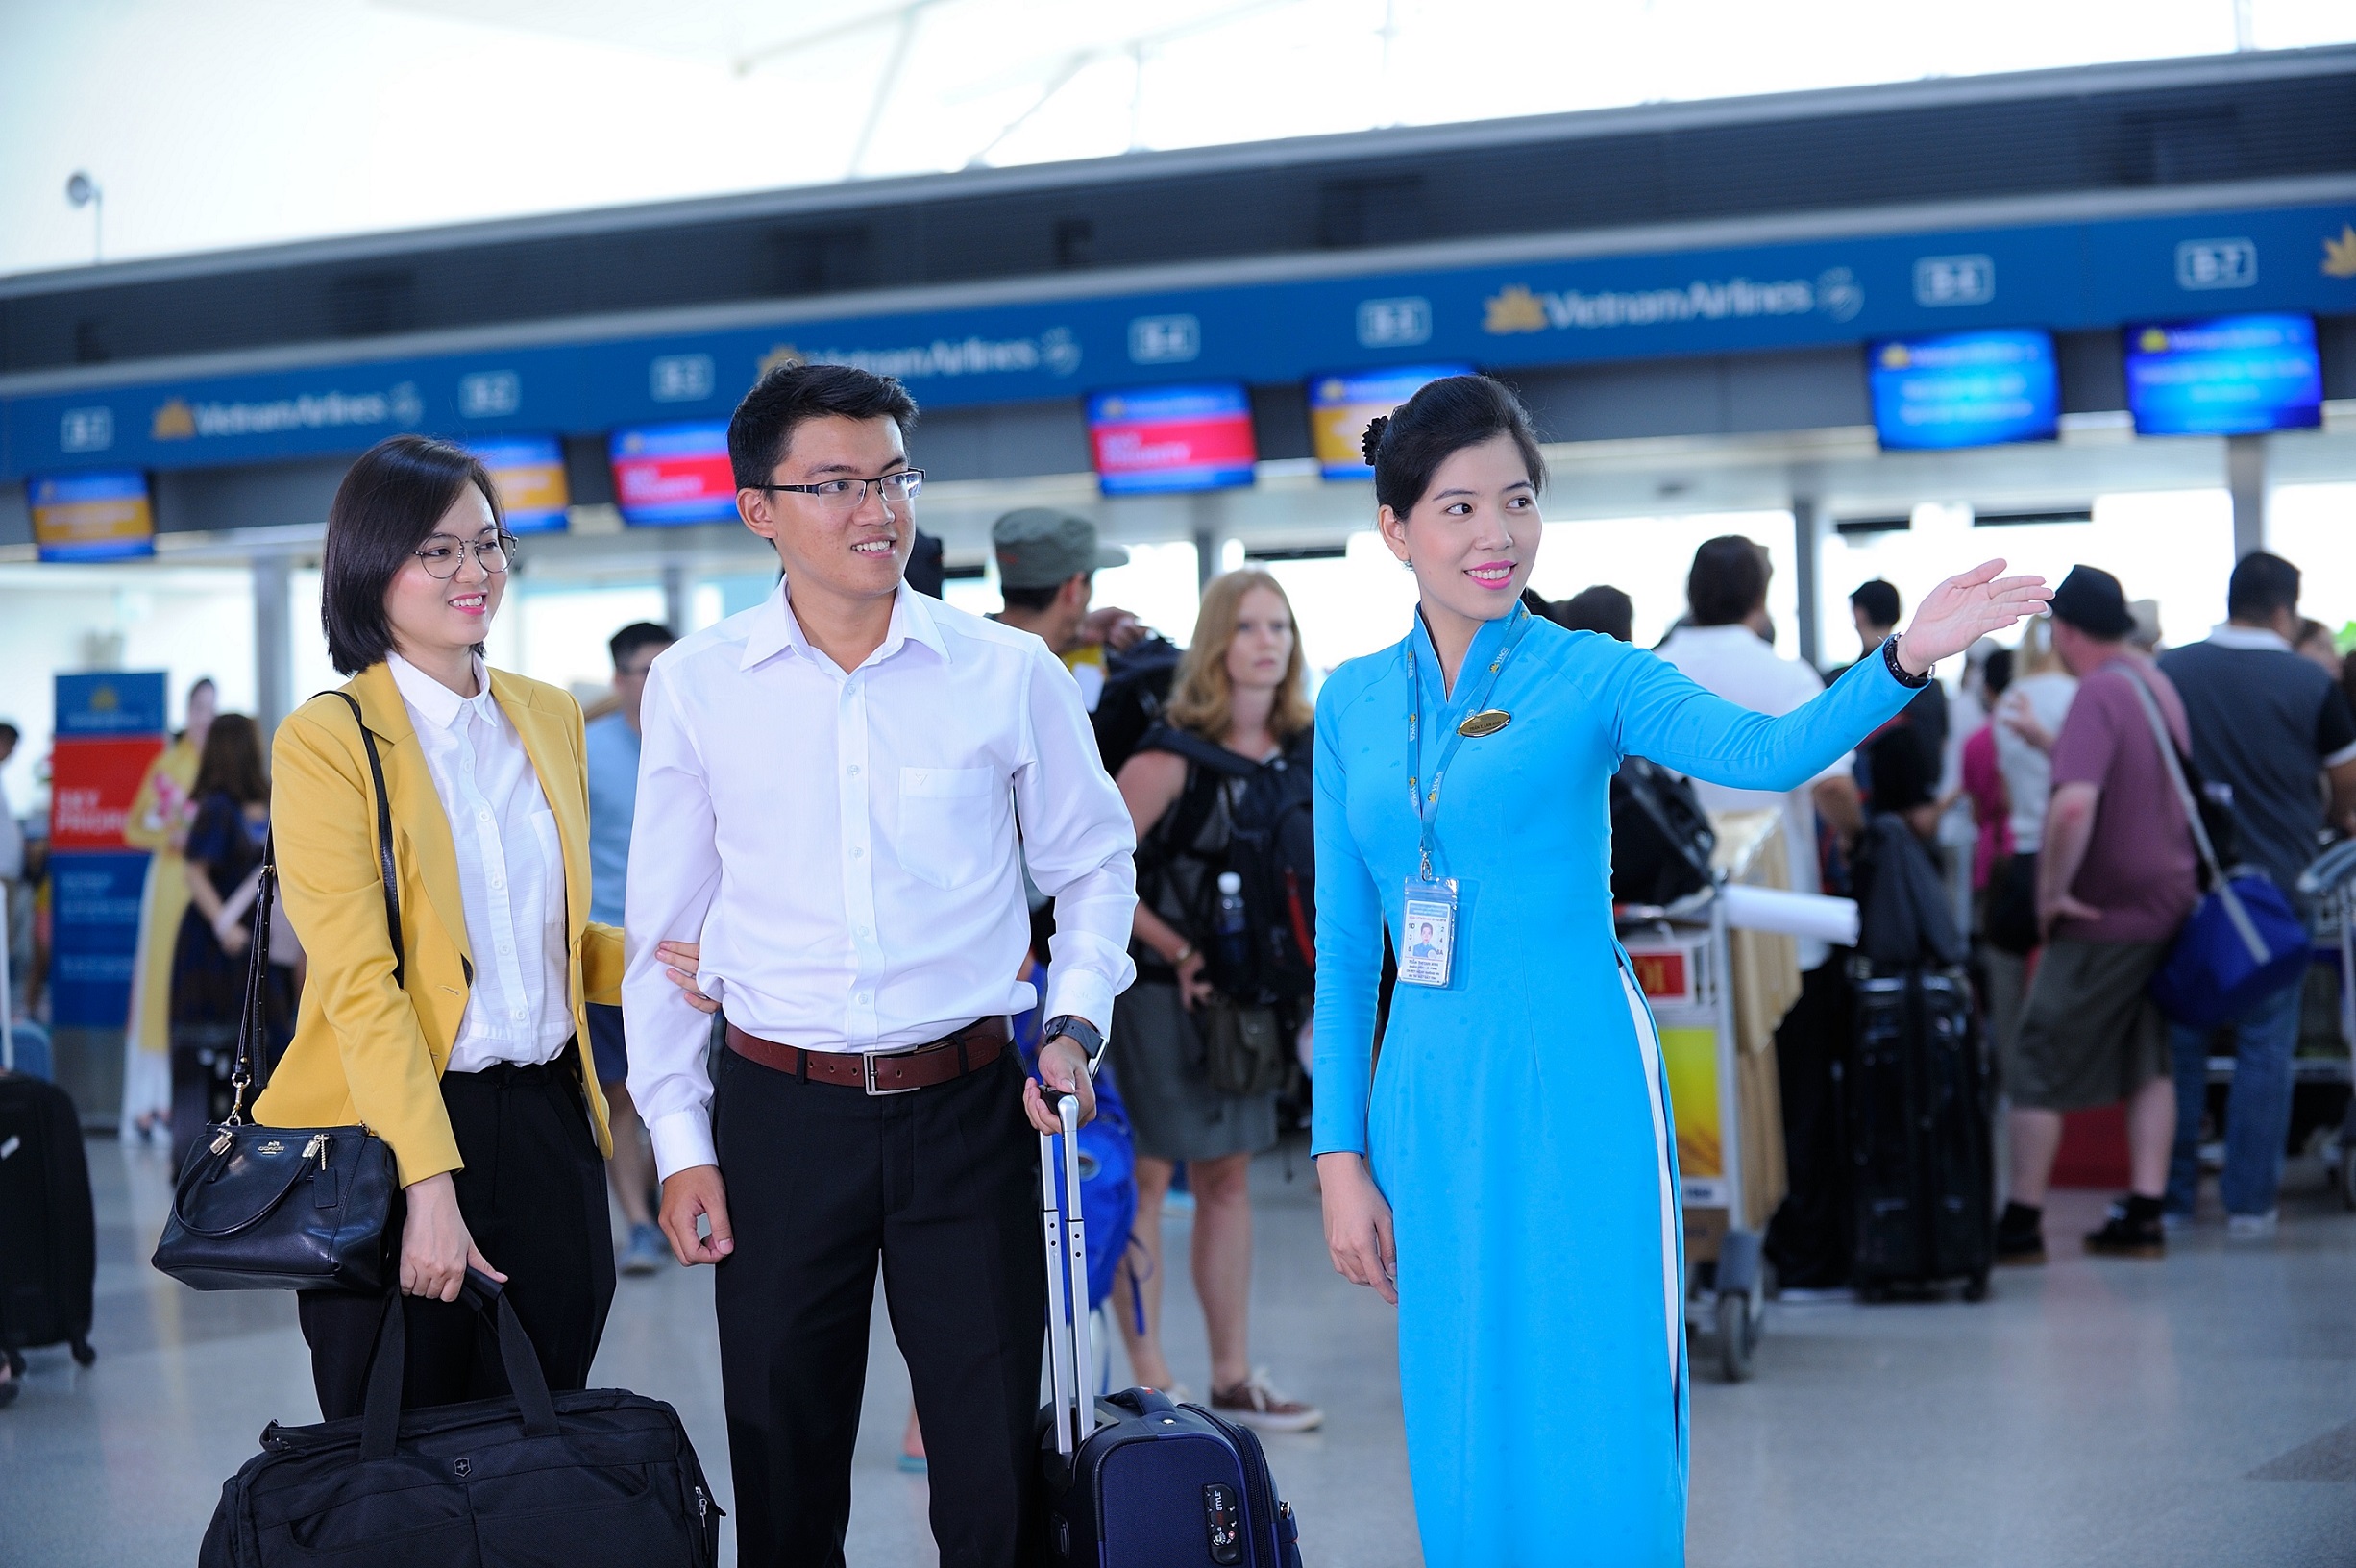 Vietnam Airlines sẽ bố trí biển bảng thông báo về việc nhà ga ngưng phát thanh tại các vị trí thuận tiện như quầy thủ tục, khu vực an ninh soi chiếu, phòng chờ và cửa ra máy bay để hành khách chủ động, lưu tâm cập nhật thông tin chuyến bay trên màn hình thông báo lịch bay (FIDS) tại nhà ga.